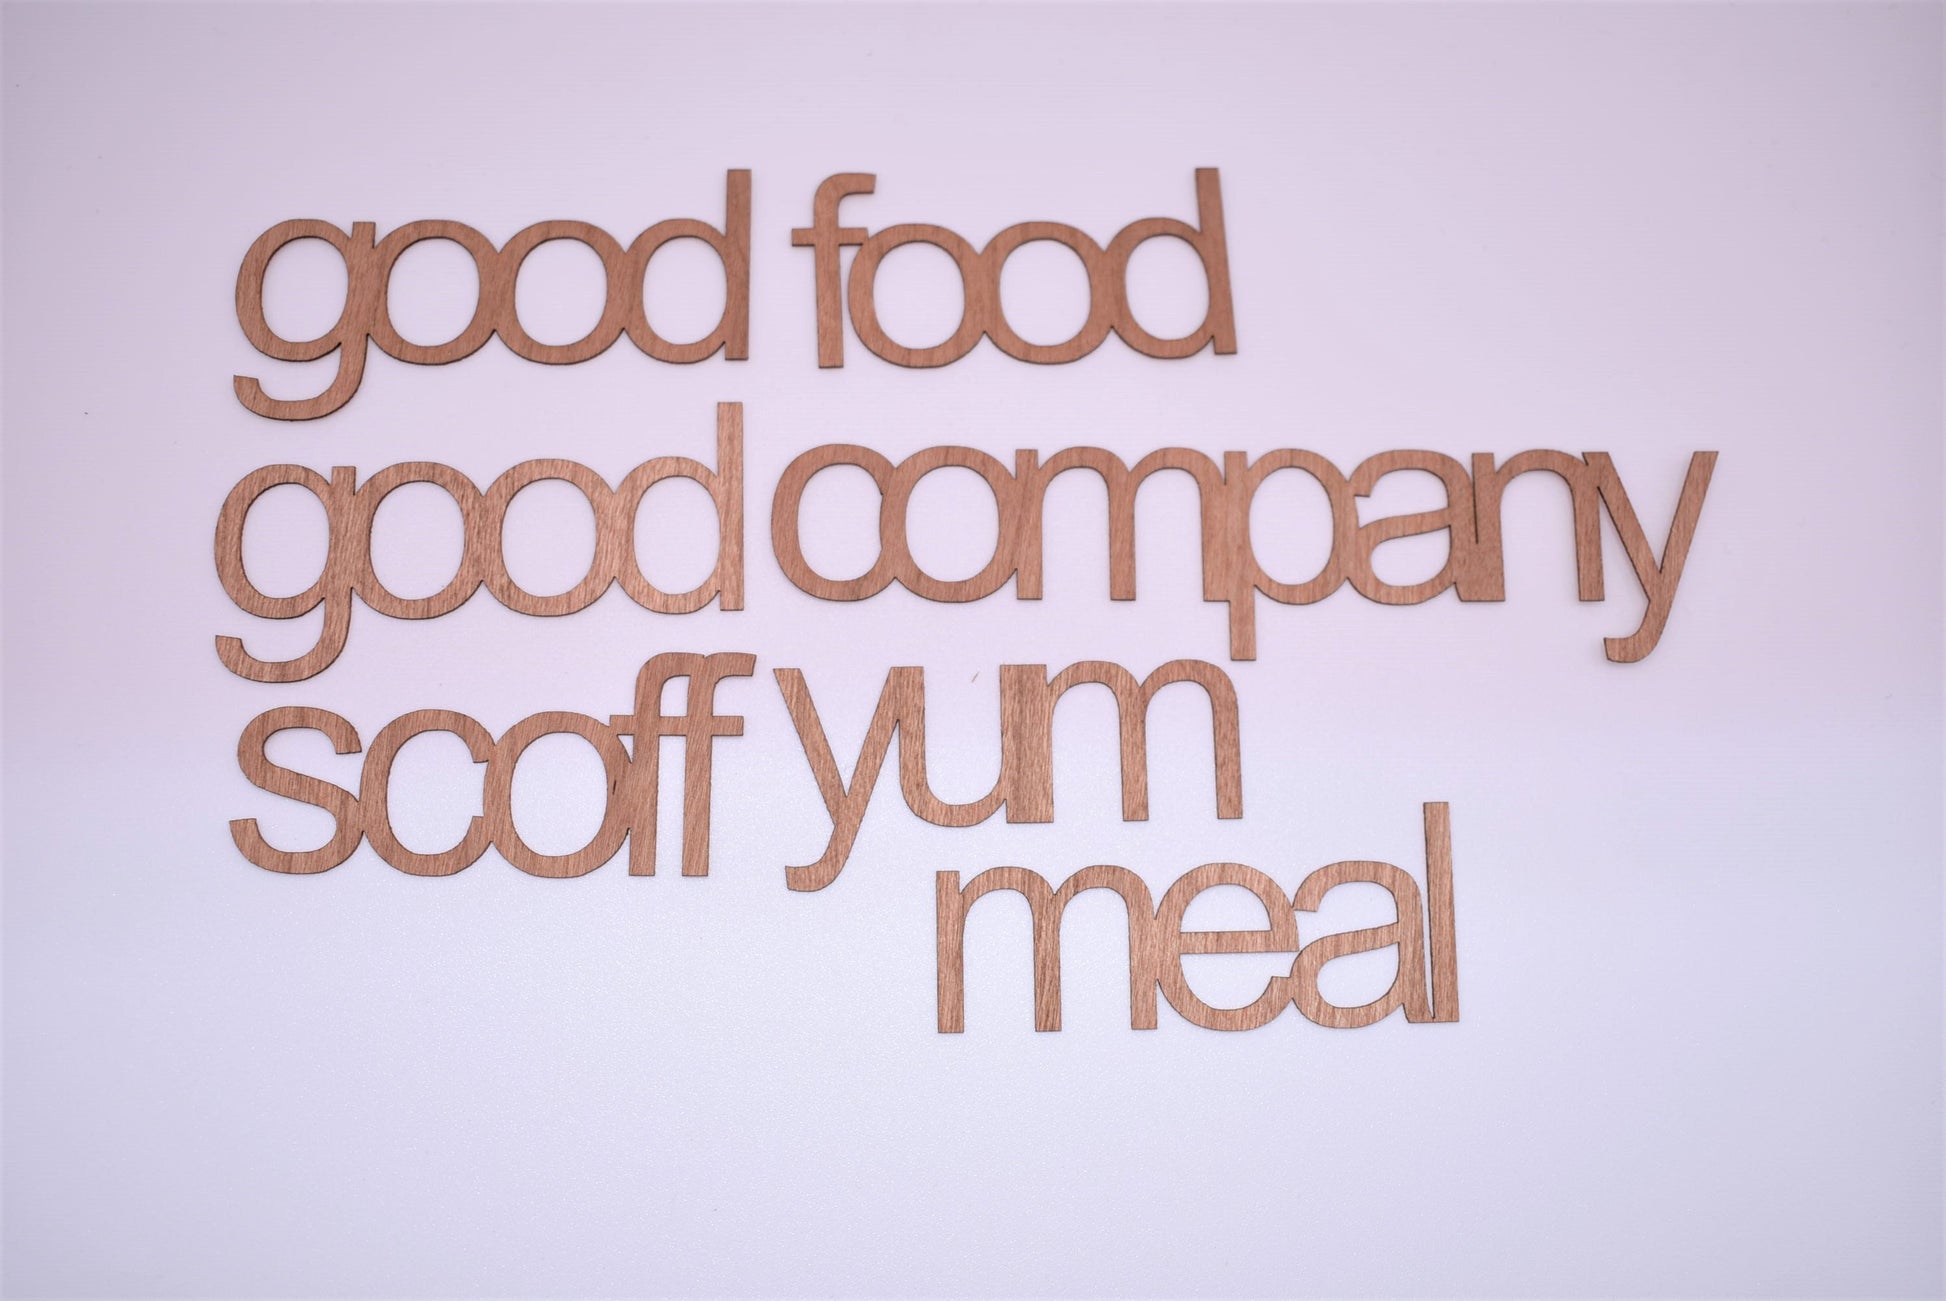 Food word bundle - 1 - Creative Designs By Kari